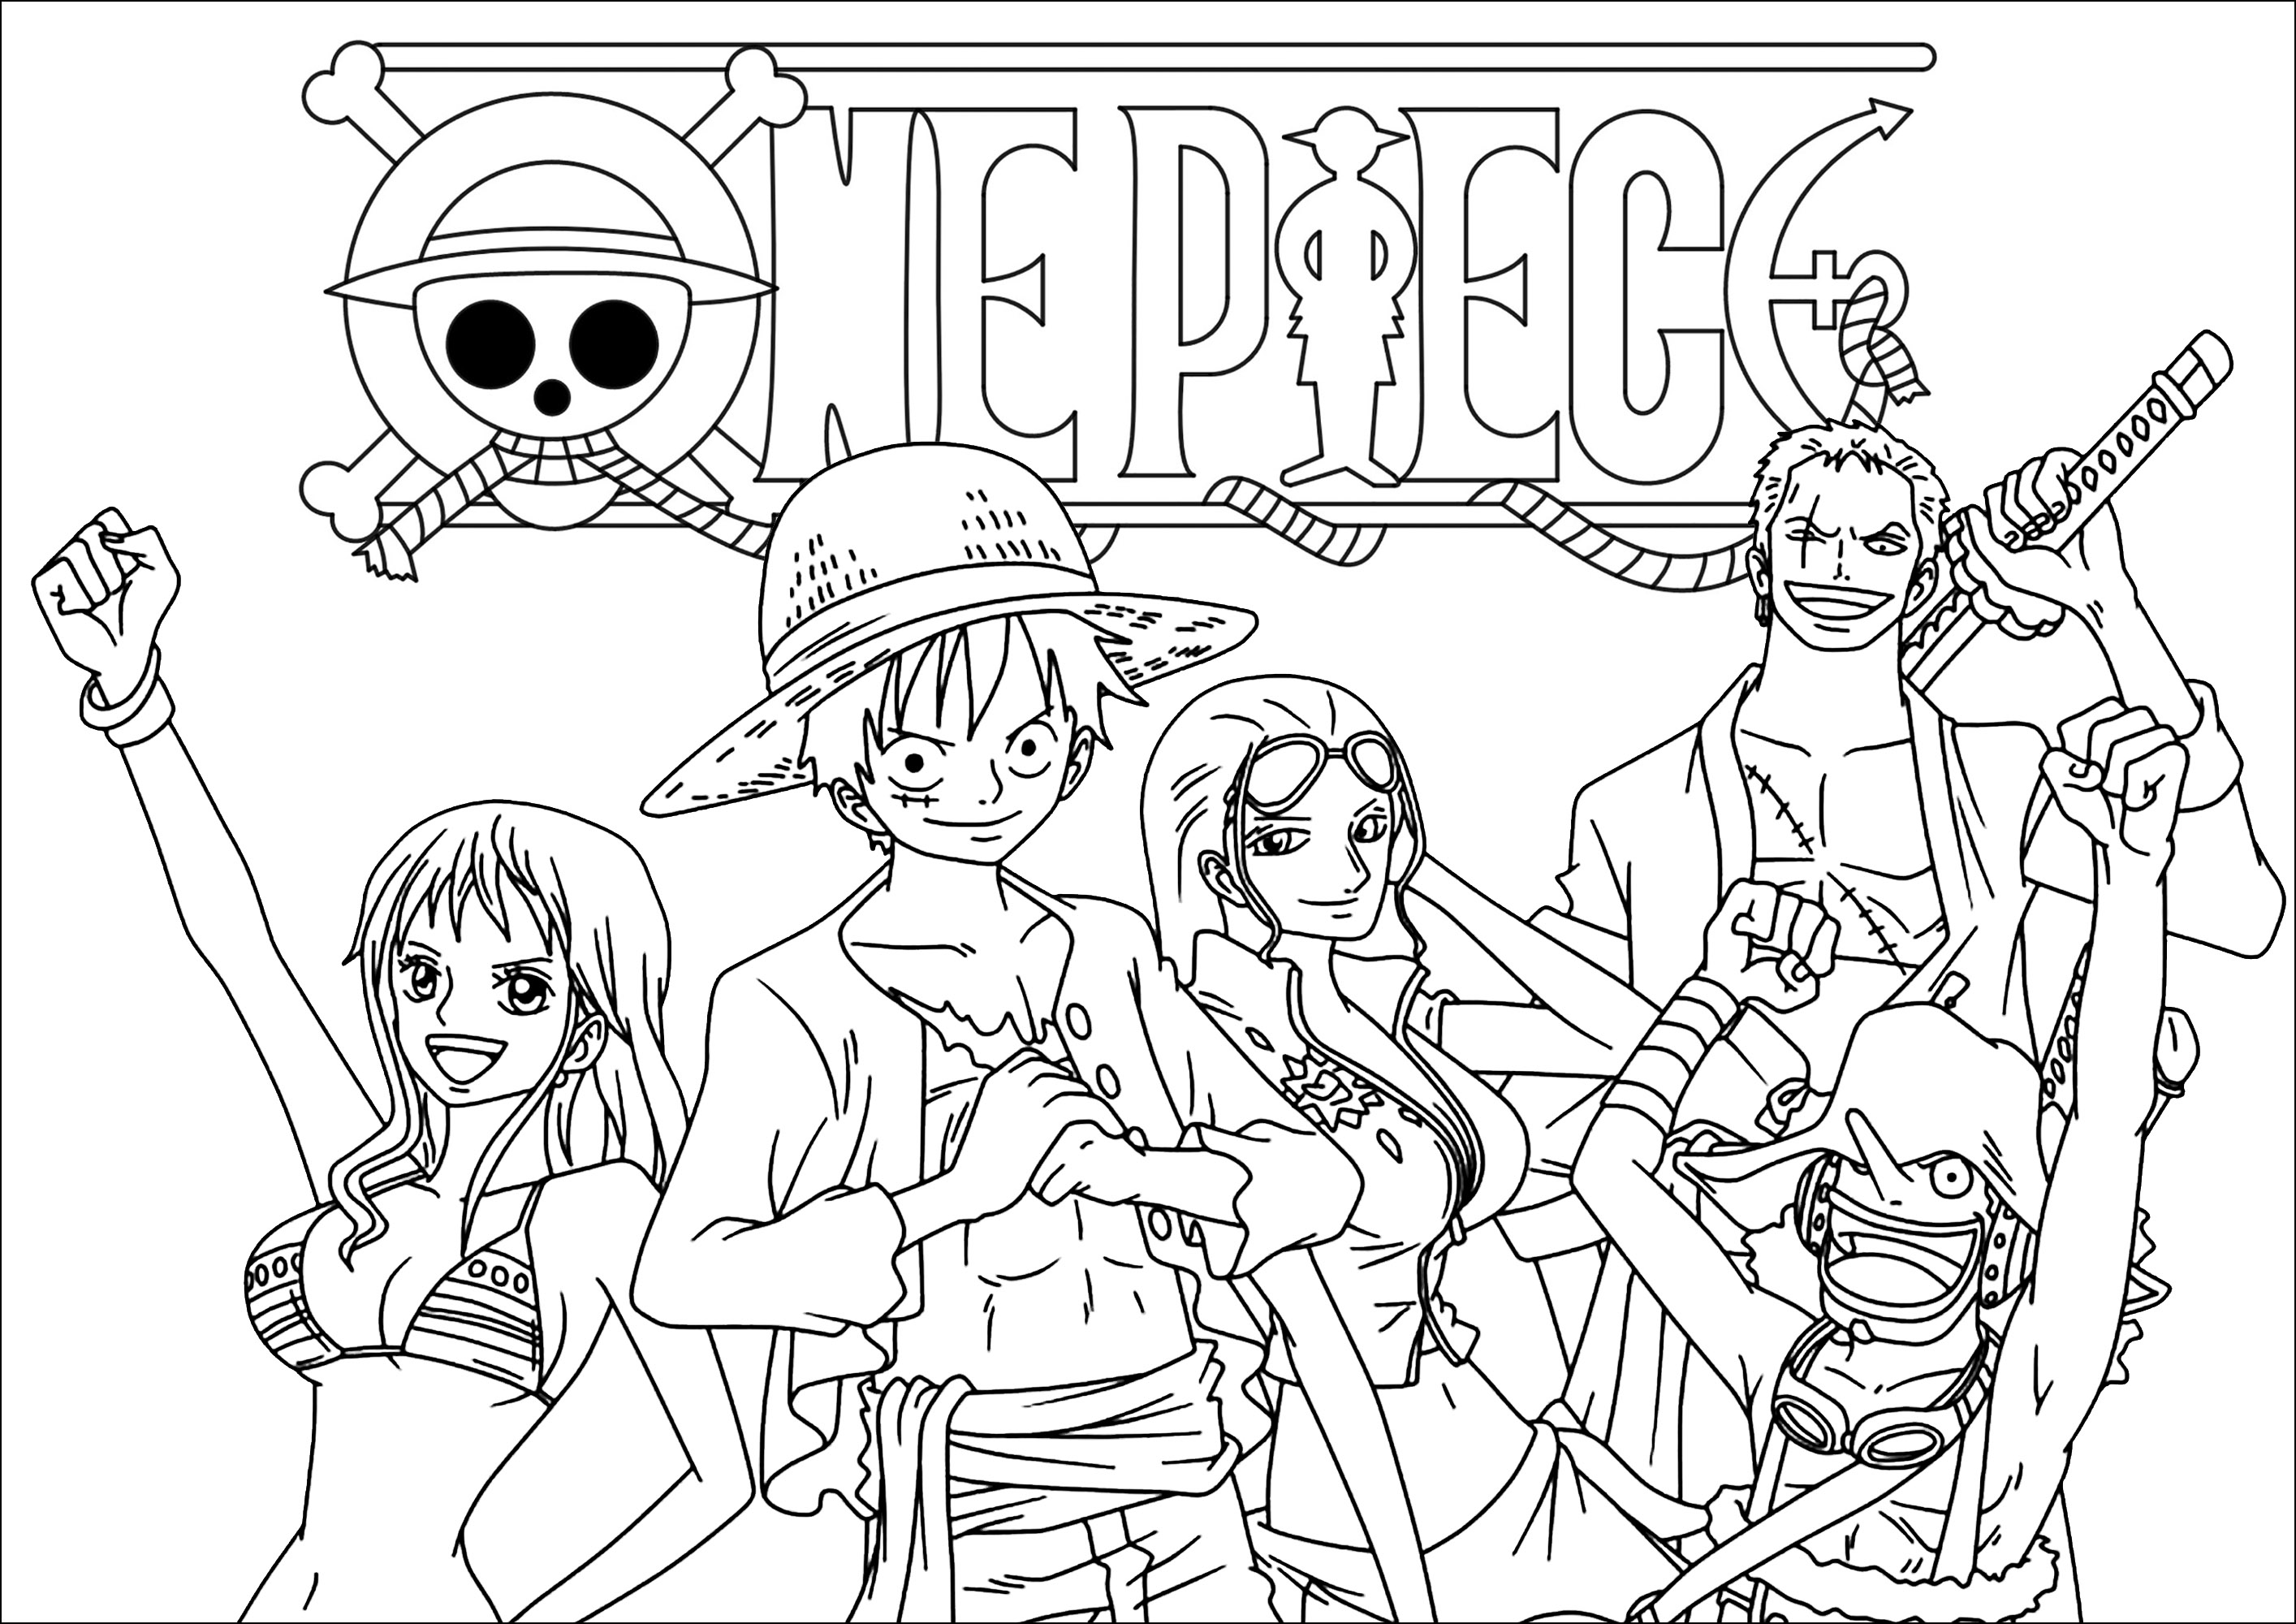 Personnages de Uma pedaço et Logo. Cor em Monkey D. Luffy, Roronoa Zoro, Nami e outras personagens.